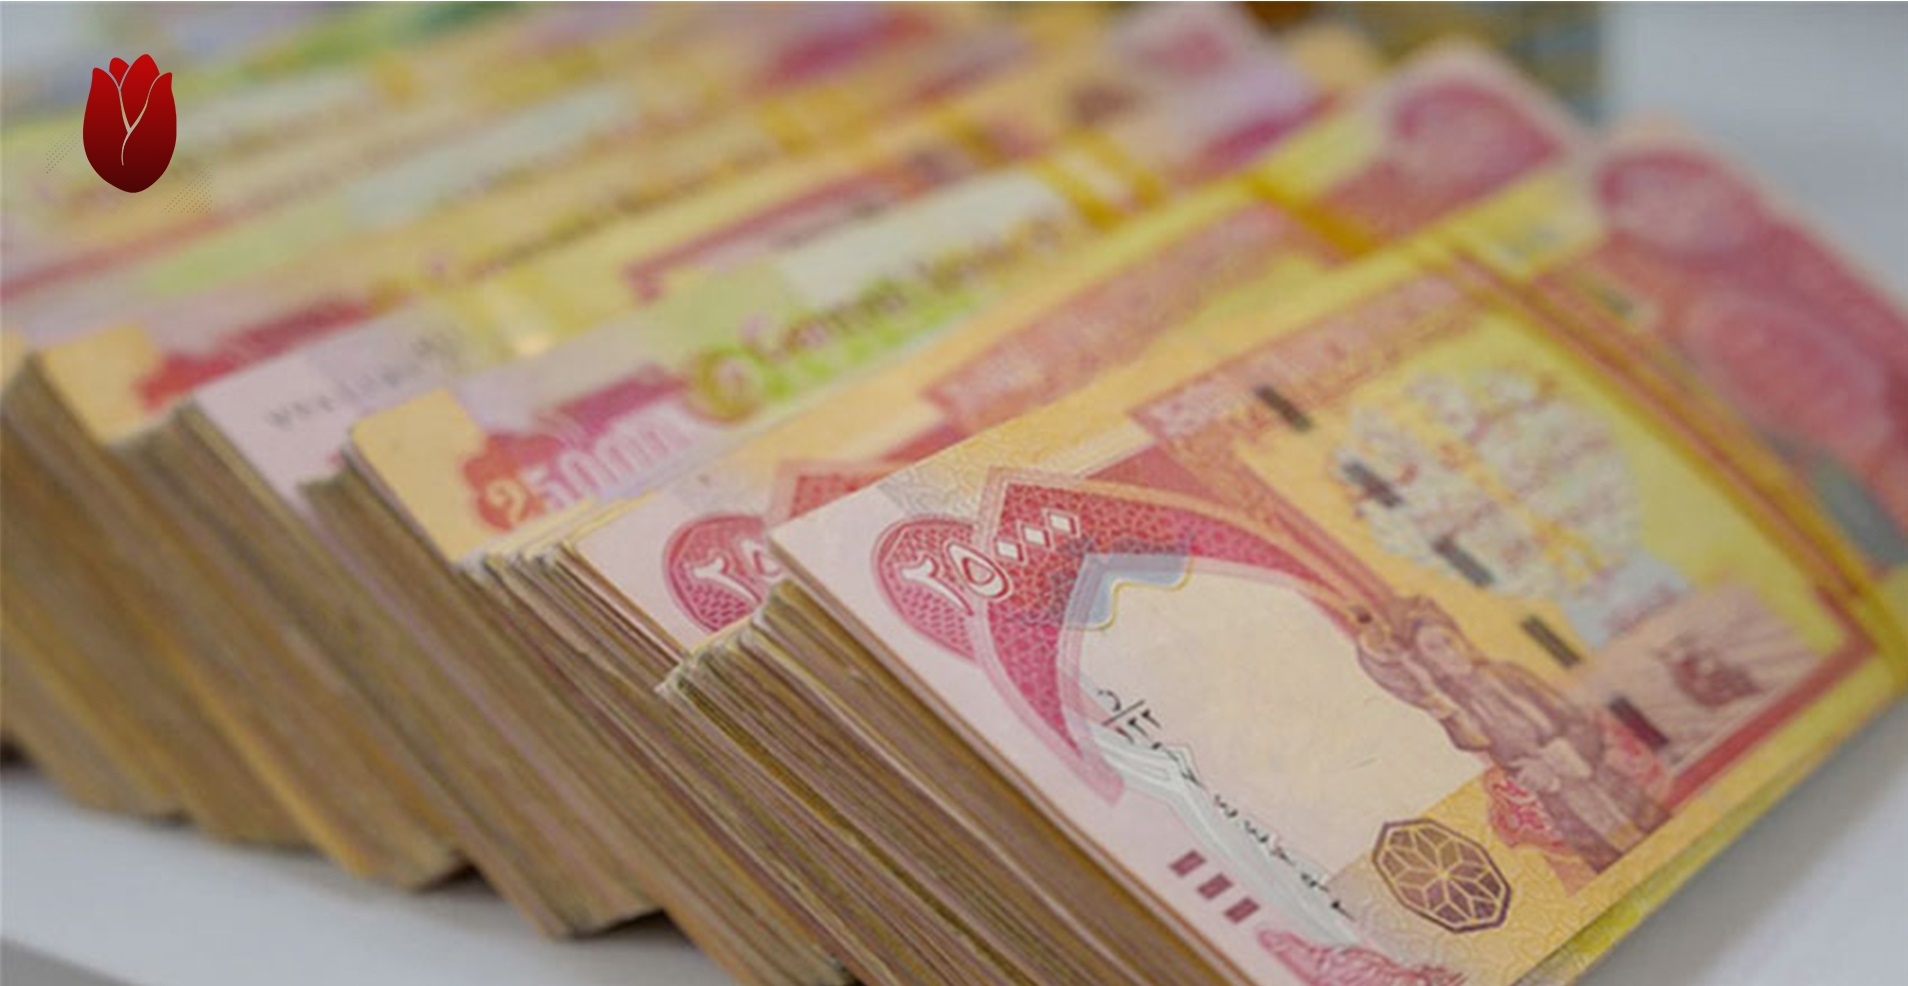 بغداد تودِع 200 مليار دينار في حساب حكومة كوردستان المصرفي